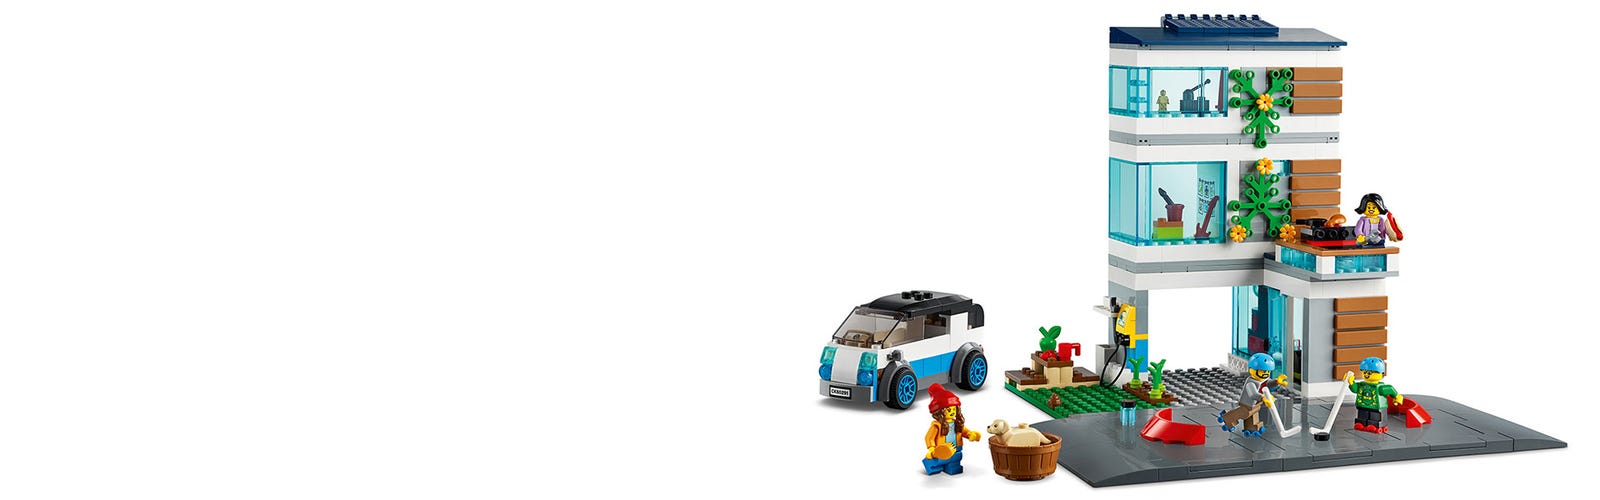 LEGO 60291 City Villetta Familiare, Casa delle Bambole, Giochi per Bambini  dai 5 Anni in su, 4 Minifigure, Idee Regalo : : Giochi e giocattoli